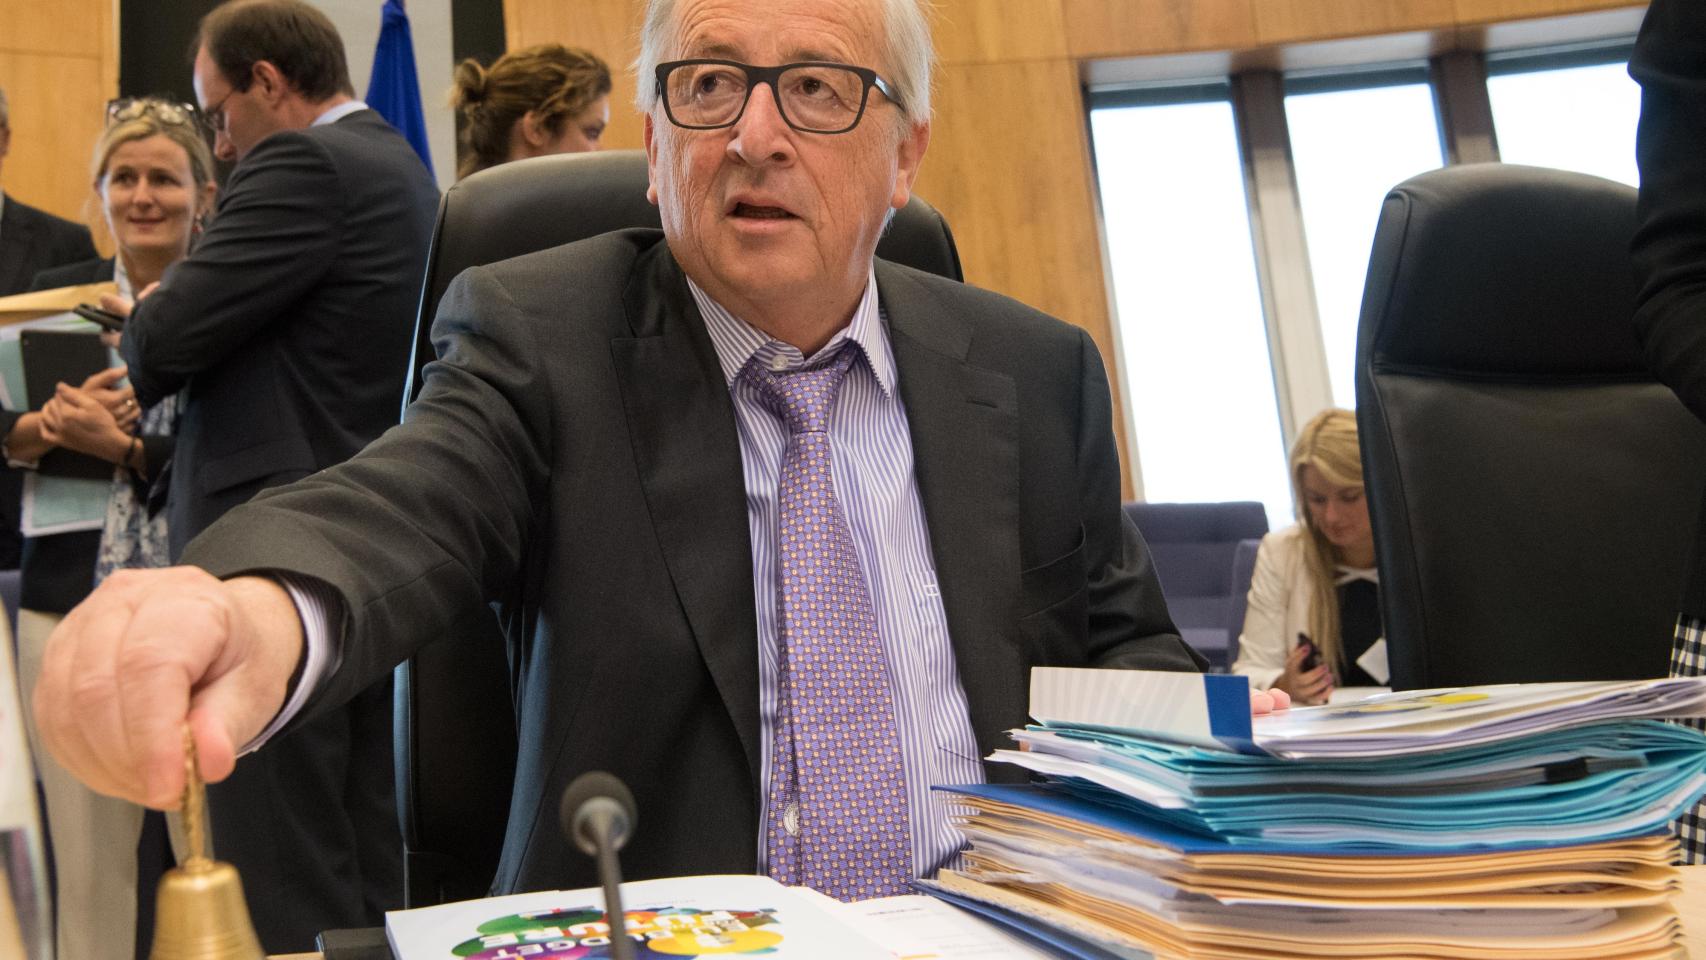 Juncker pone orden en el debate sobre el presupuesto